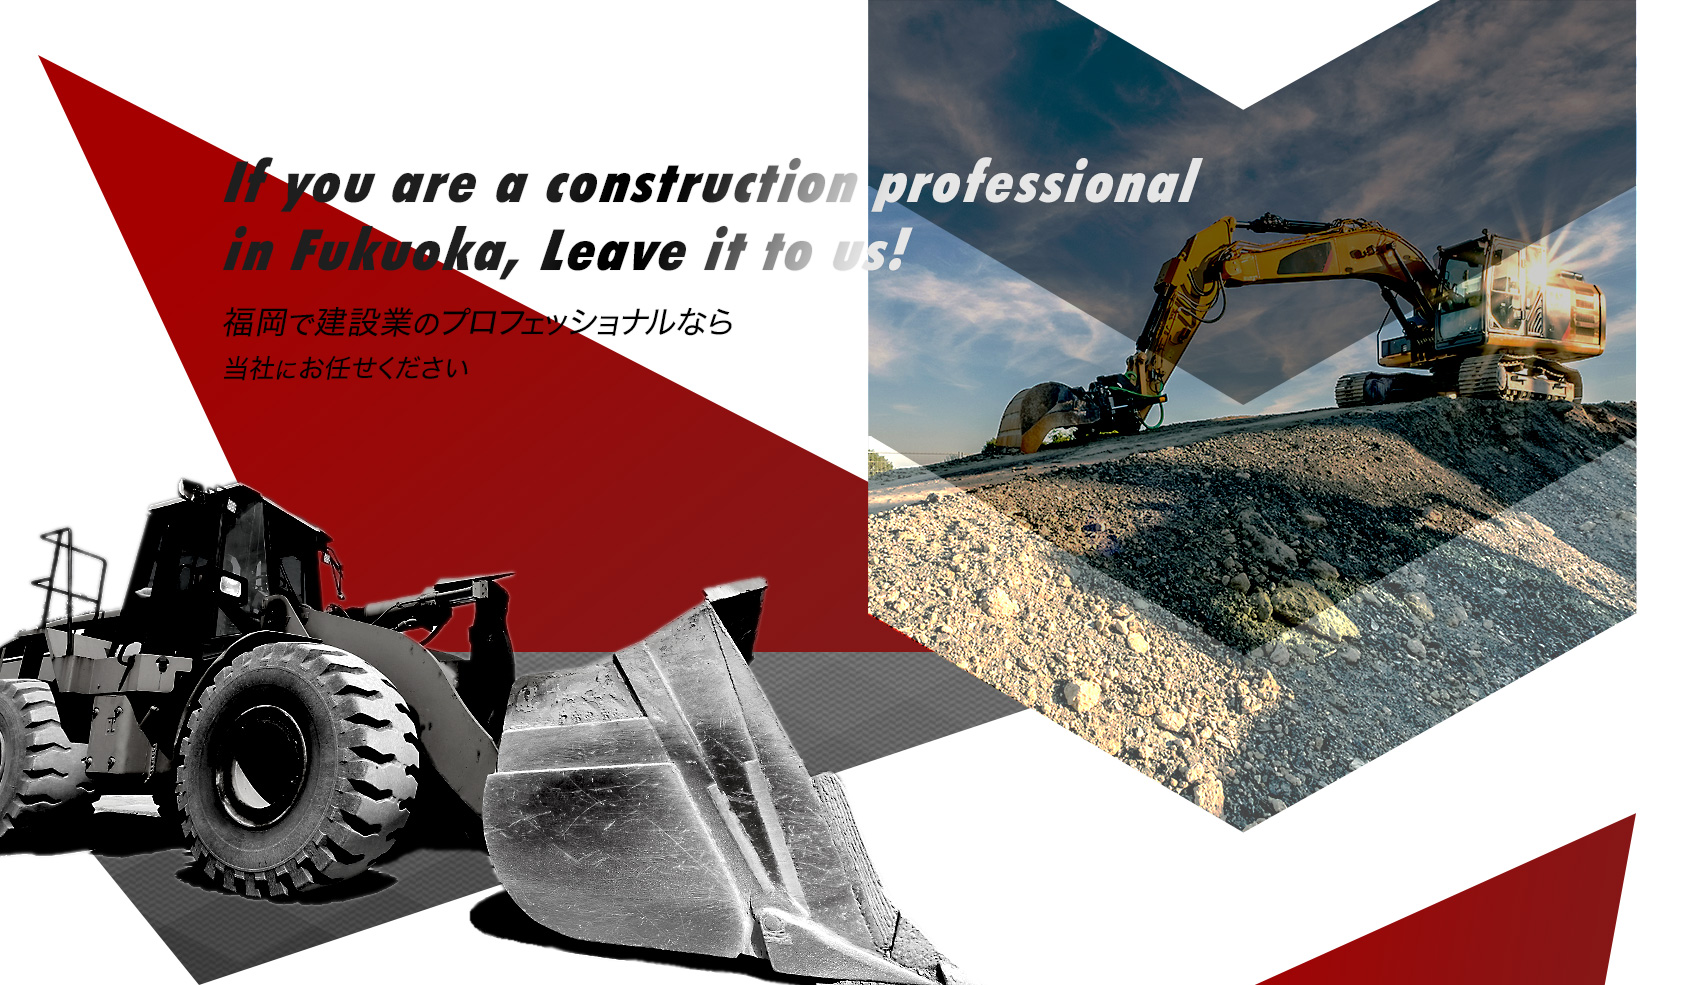 福岡で建設業のプロフェッショナルなら当社にお任せください